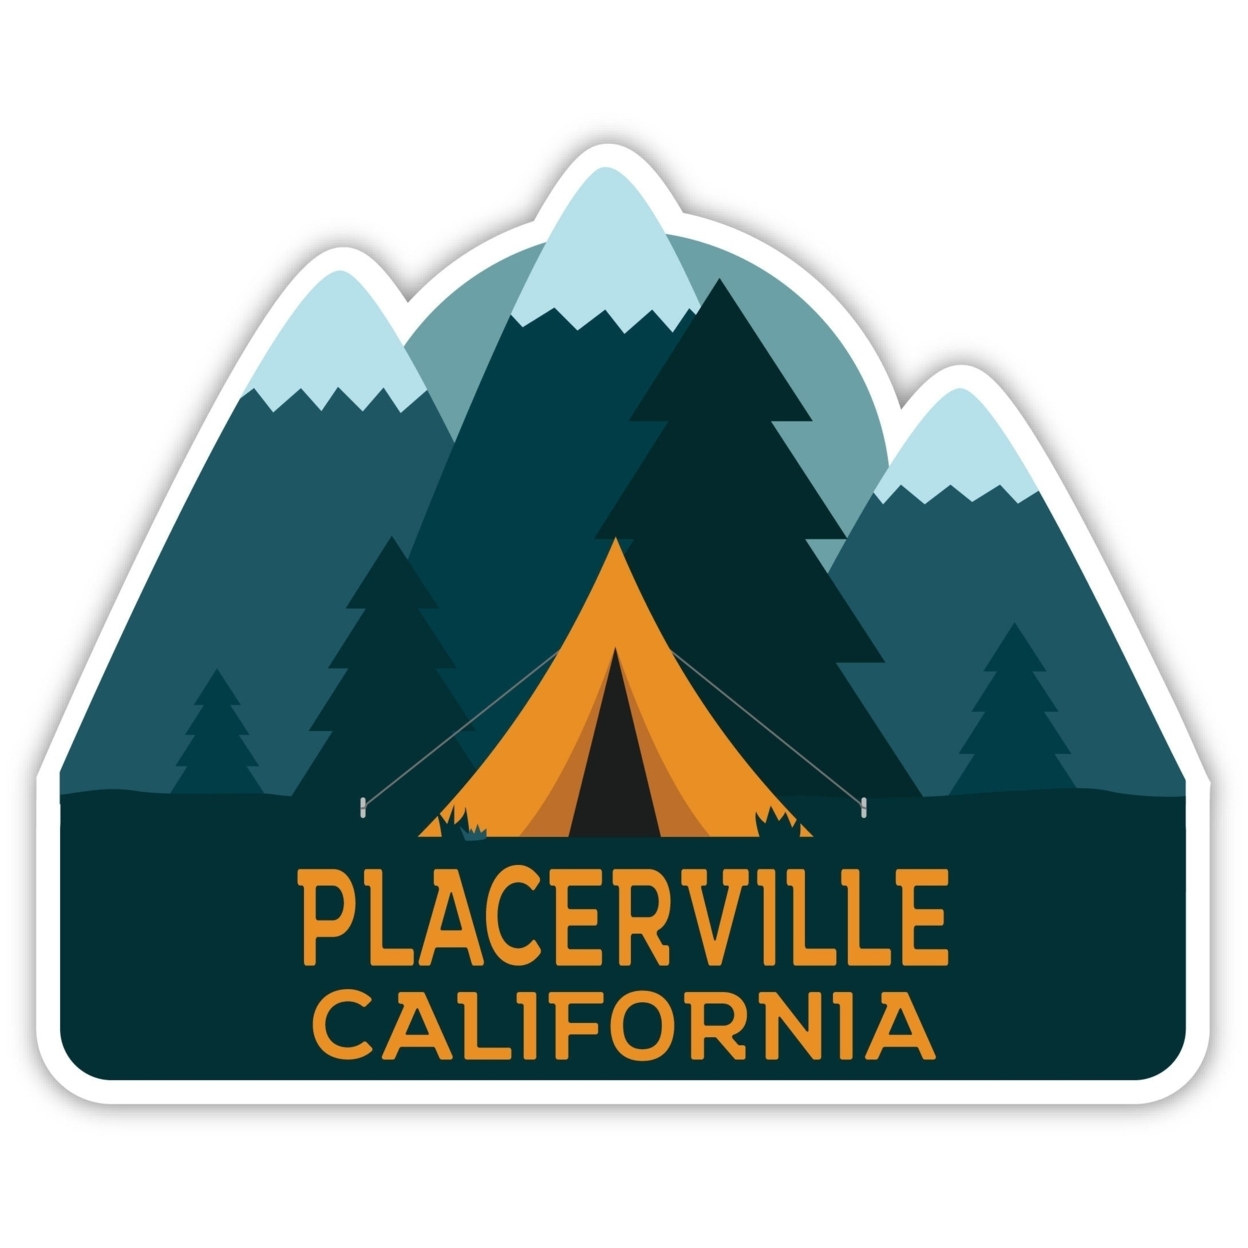 Placerville California Souvenir Decorative Stickers (Choose Theme And Size) - Single Unit, 2-Inch, Tent